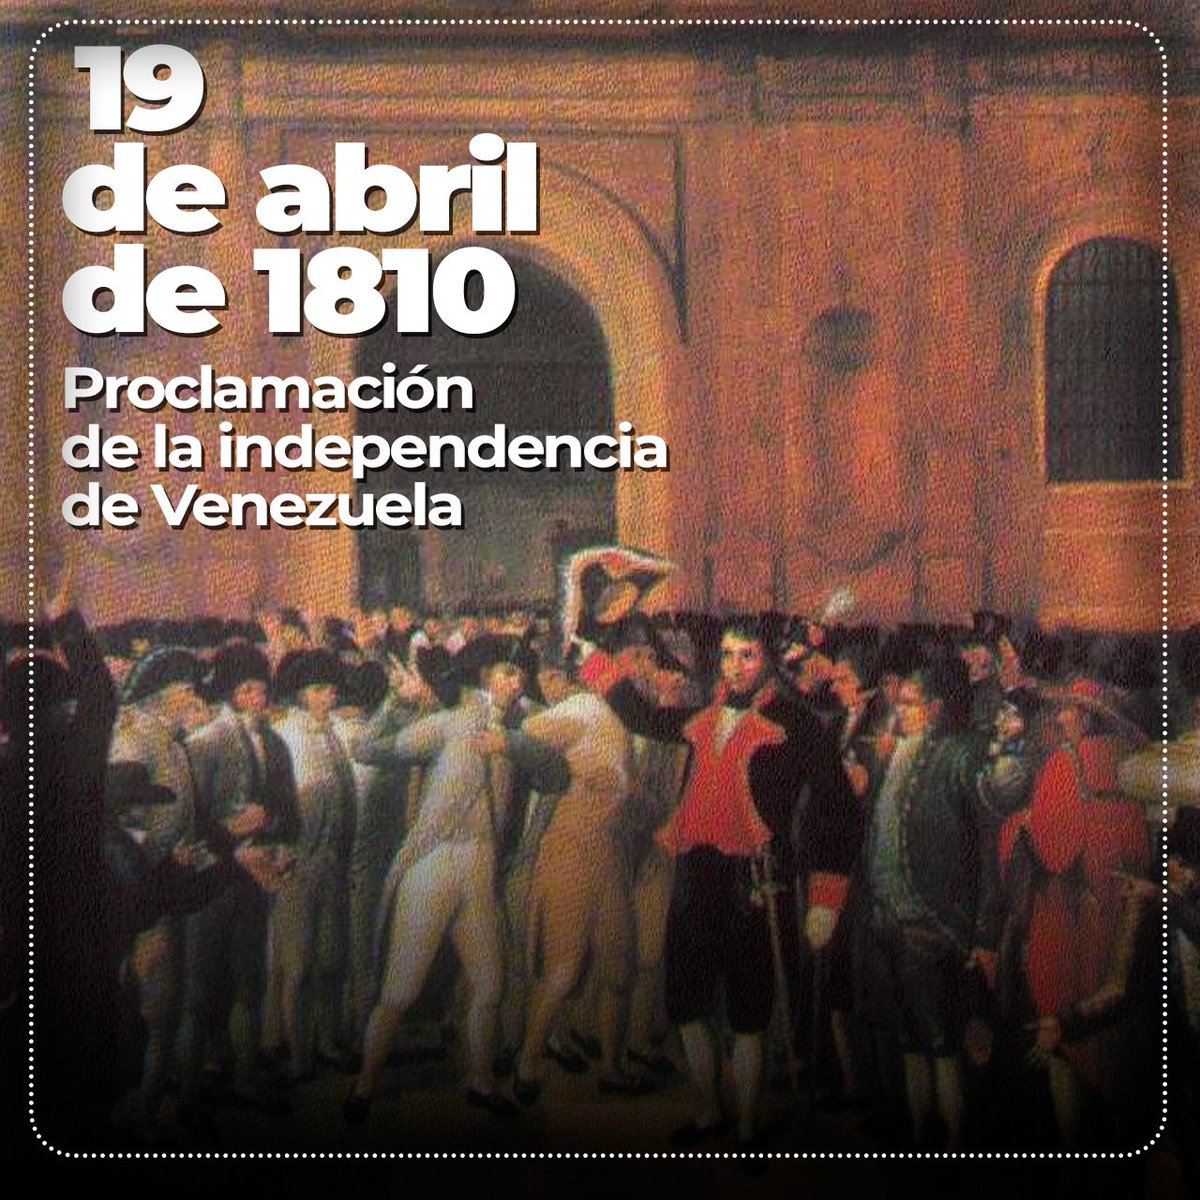 Hace 214 años, Venezuela proclamó su independencia de España, un acto heroico que sigue siendo defendido por el pueblo venezolano en su lucha por la soberanía y el legado de Simón Bolívar contra el imperialismo. #GloriaAlBravoPueblo